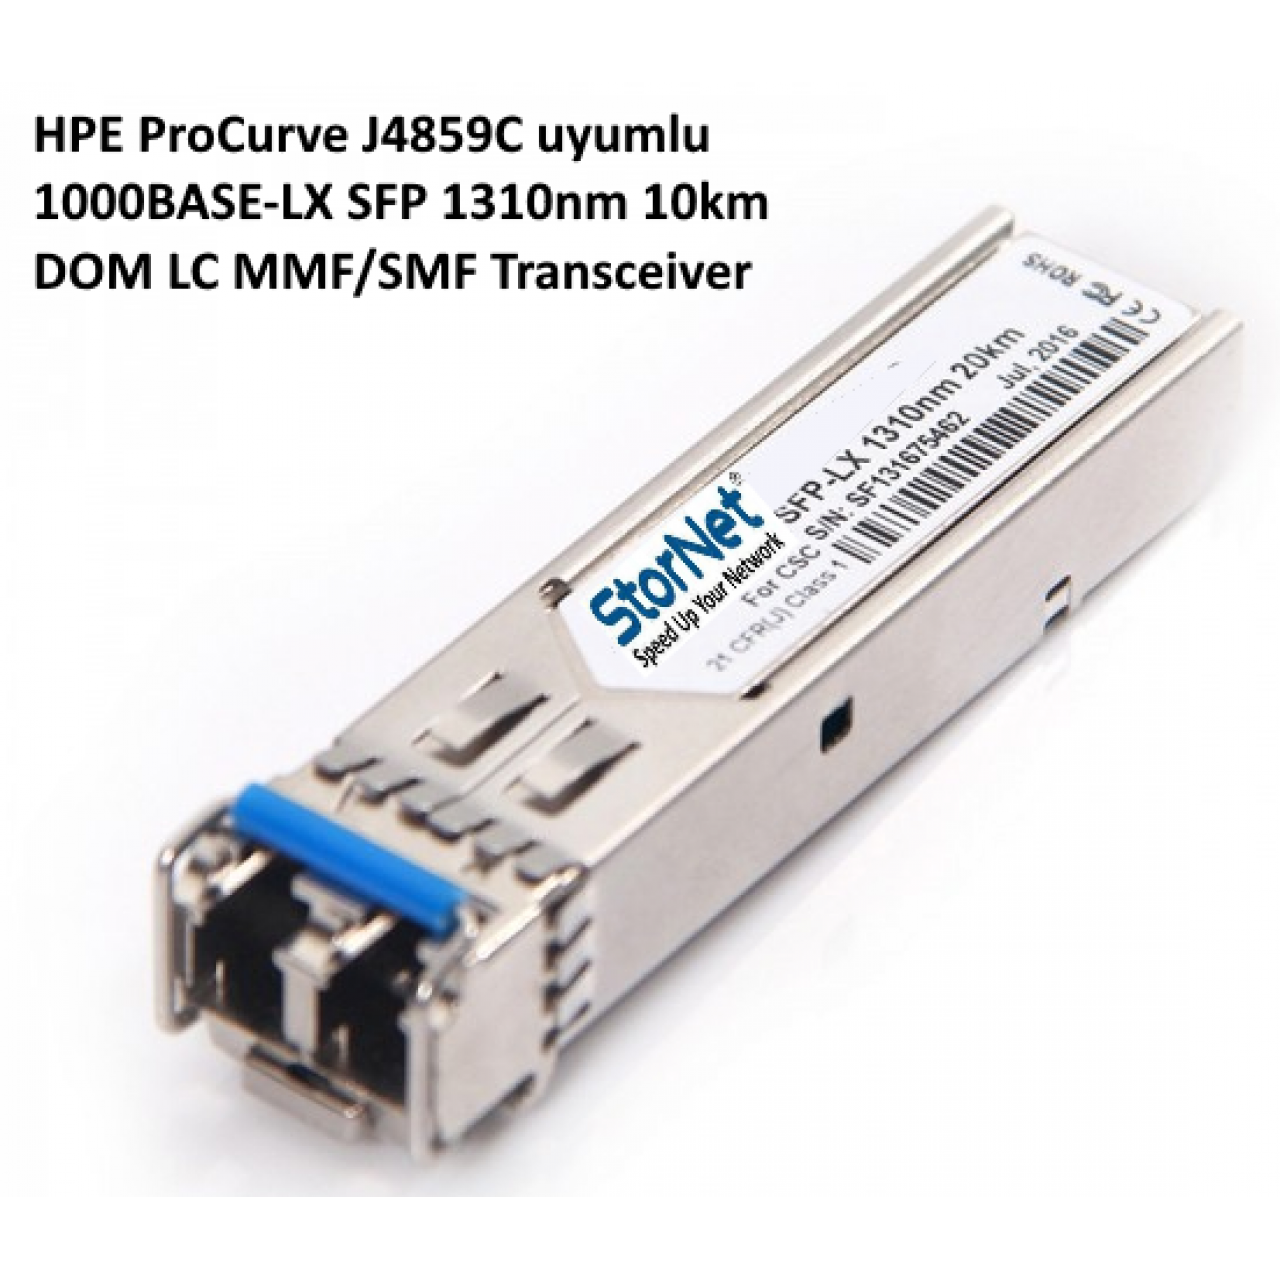 HPE ProCurve J4859C uyumlu 1000BASE-LX SFP 1310nm 10km DOM LC MMF/SMF Transceiver Modül